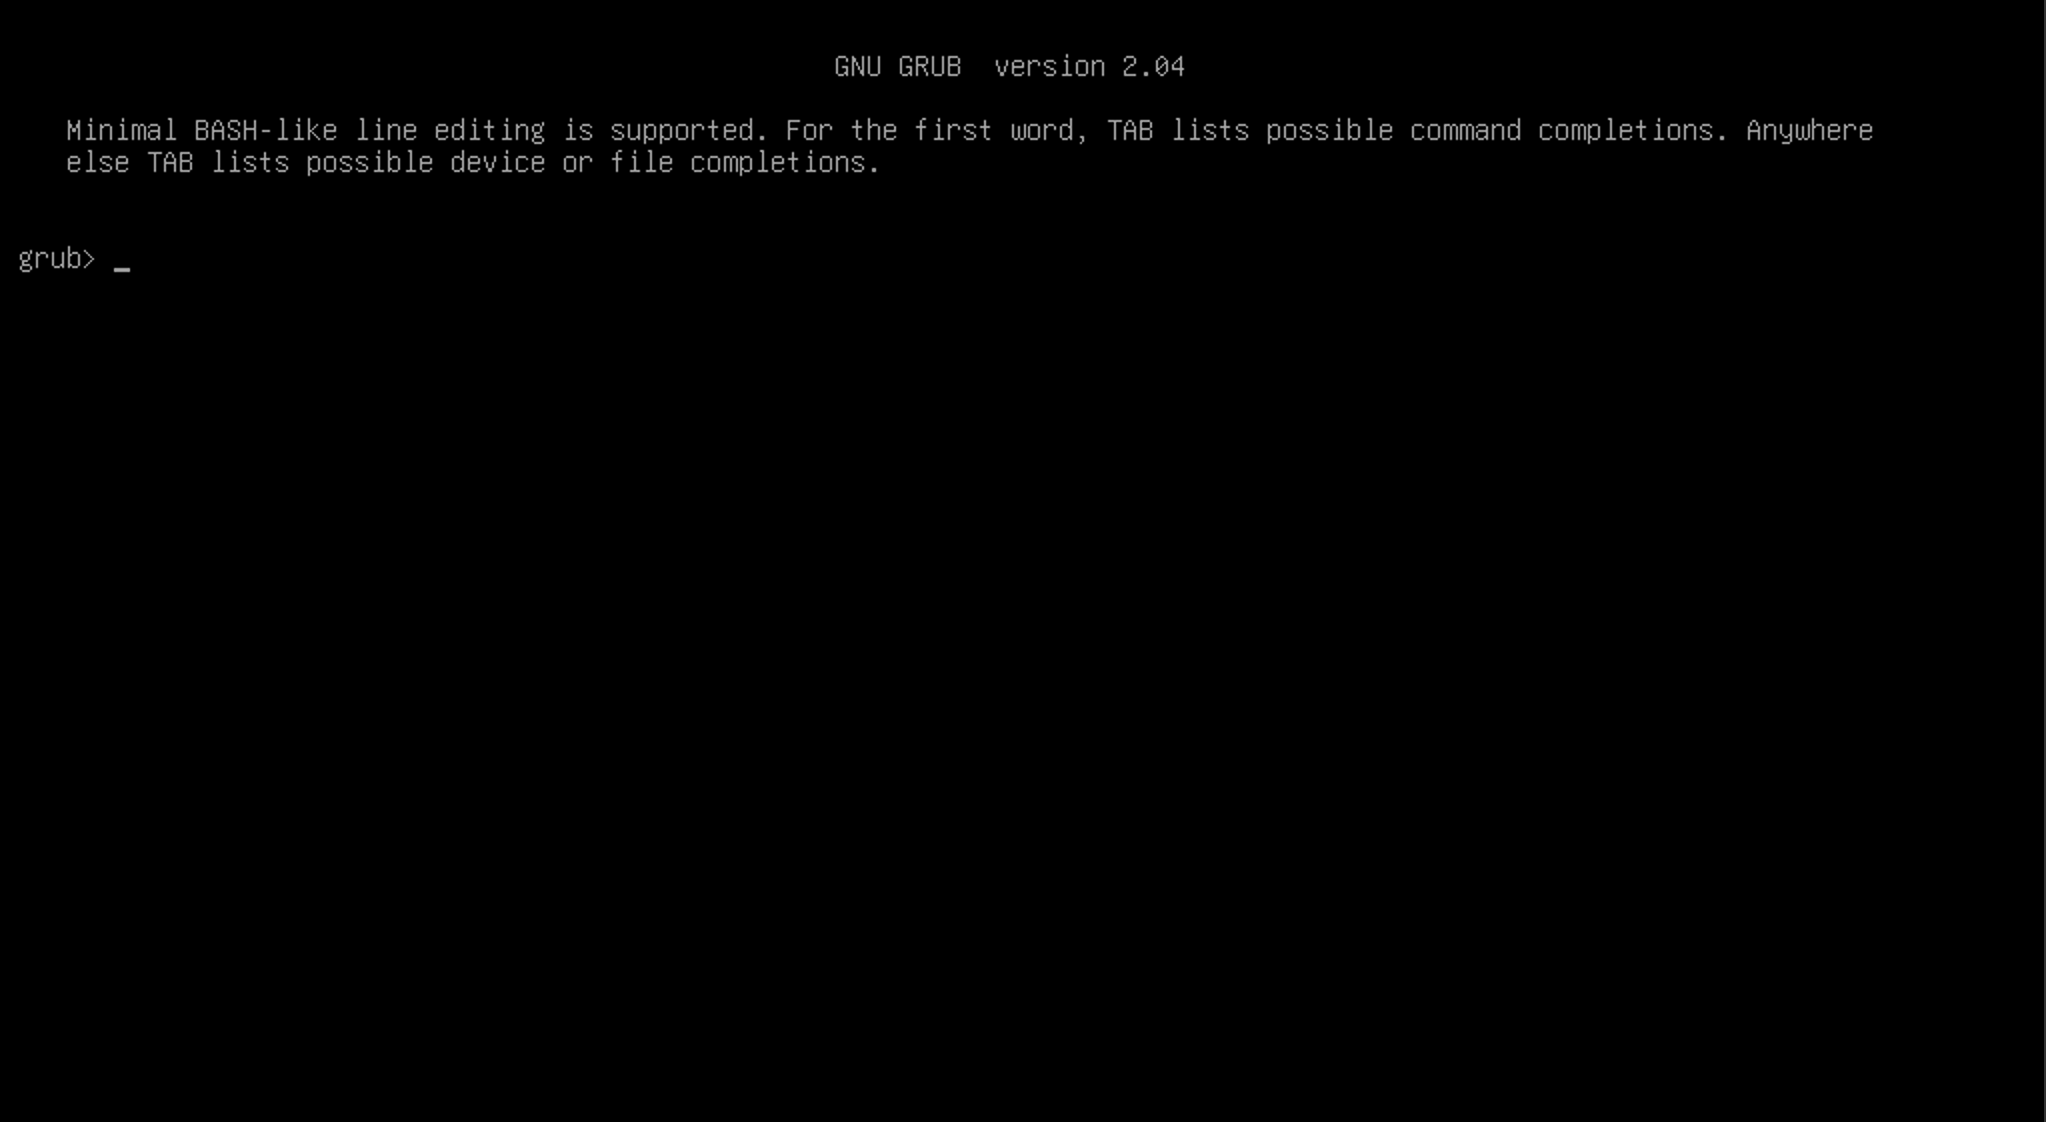 A blank GRUB prompt for GNU GRUB version 2.04.